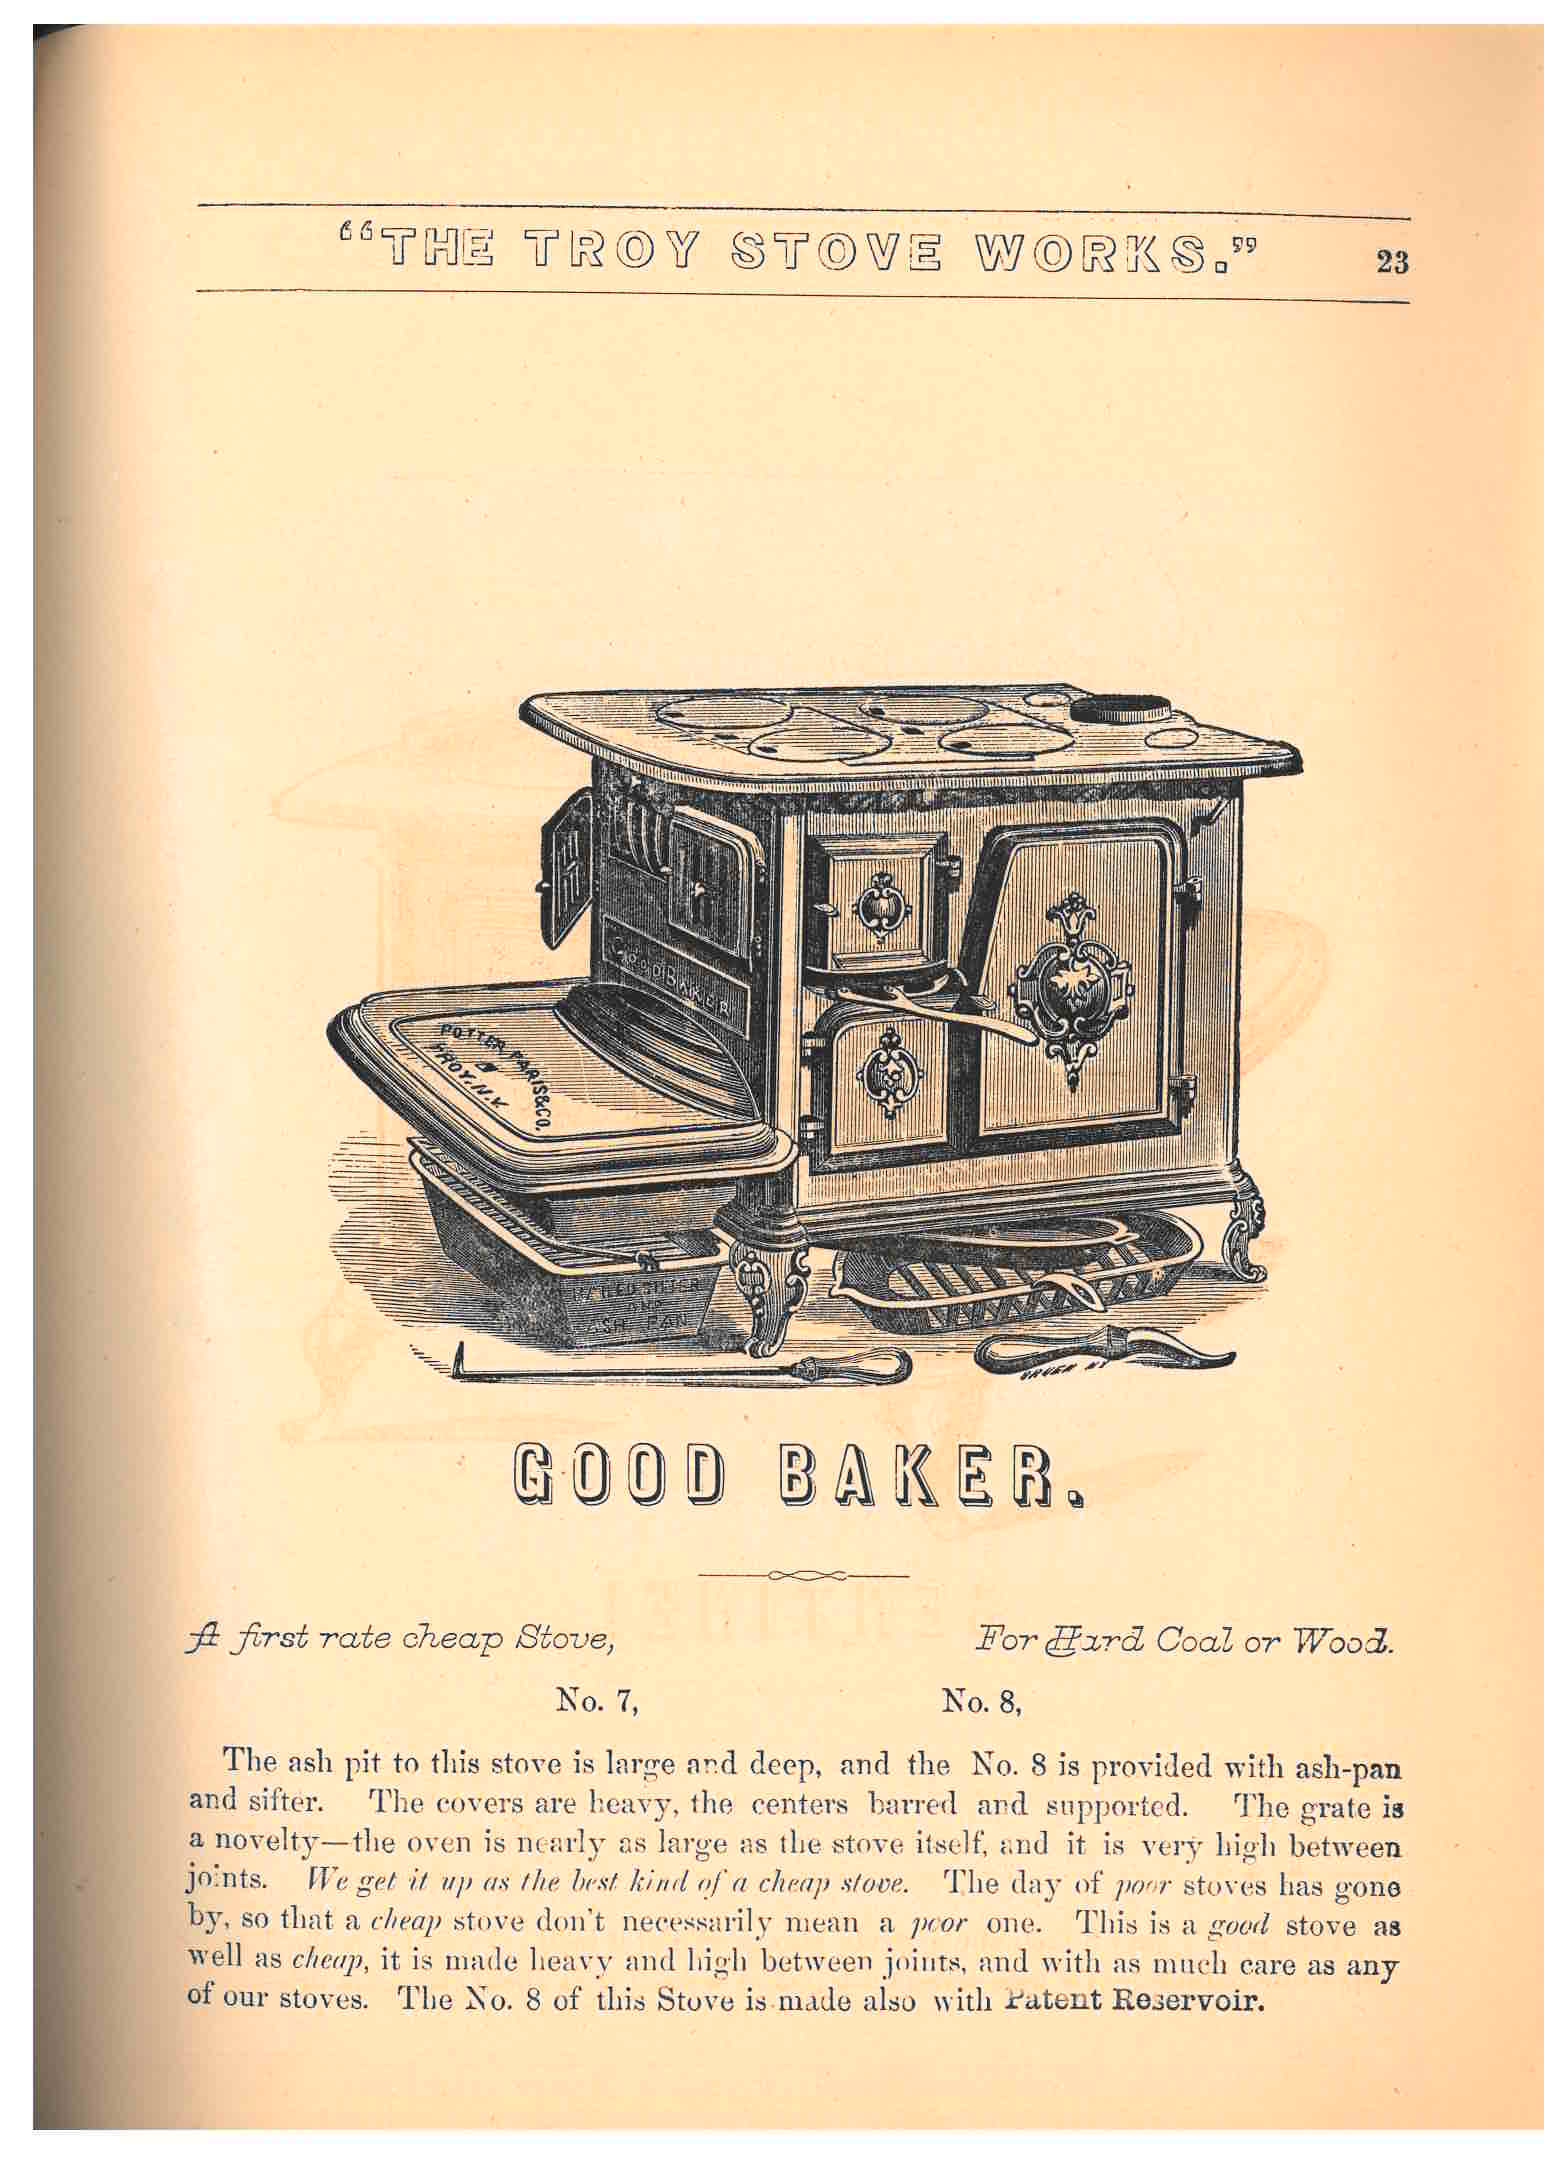 "Good Baker" stove